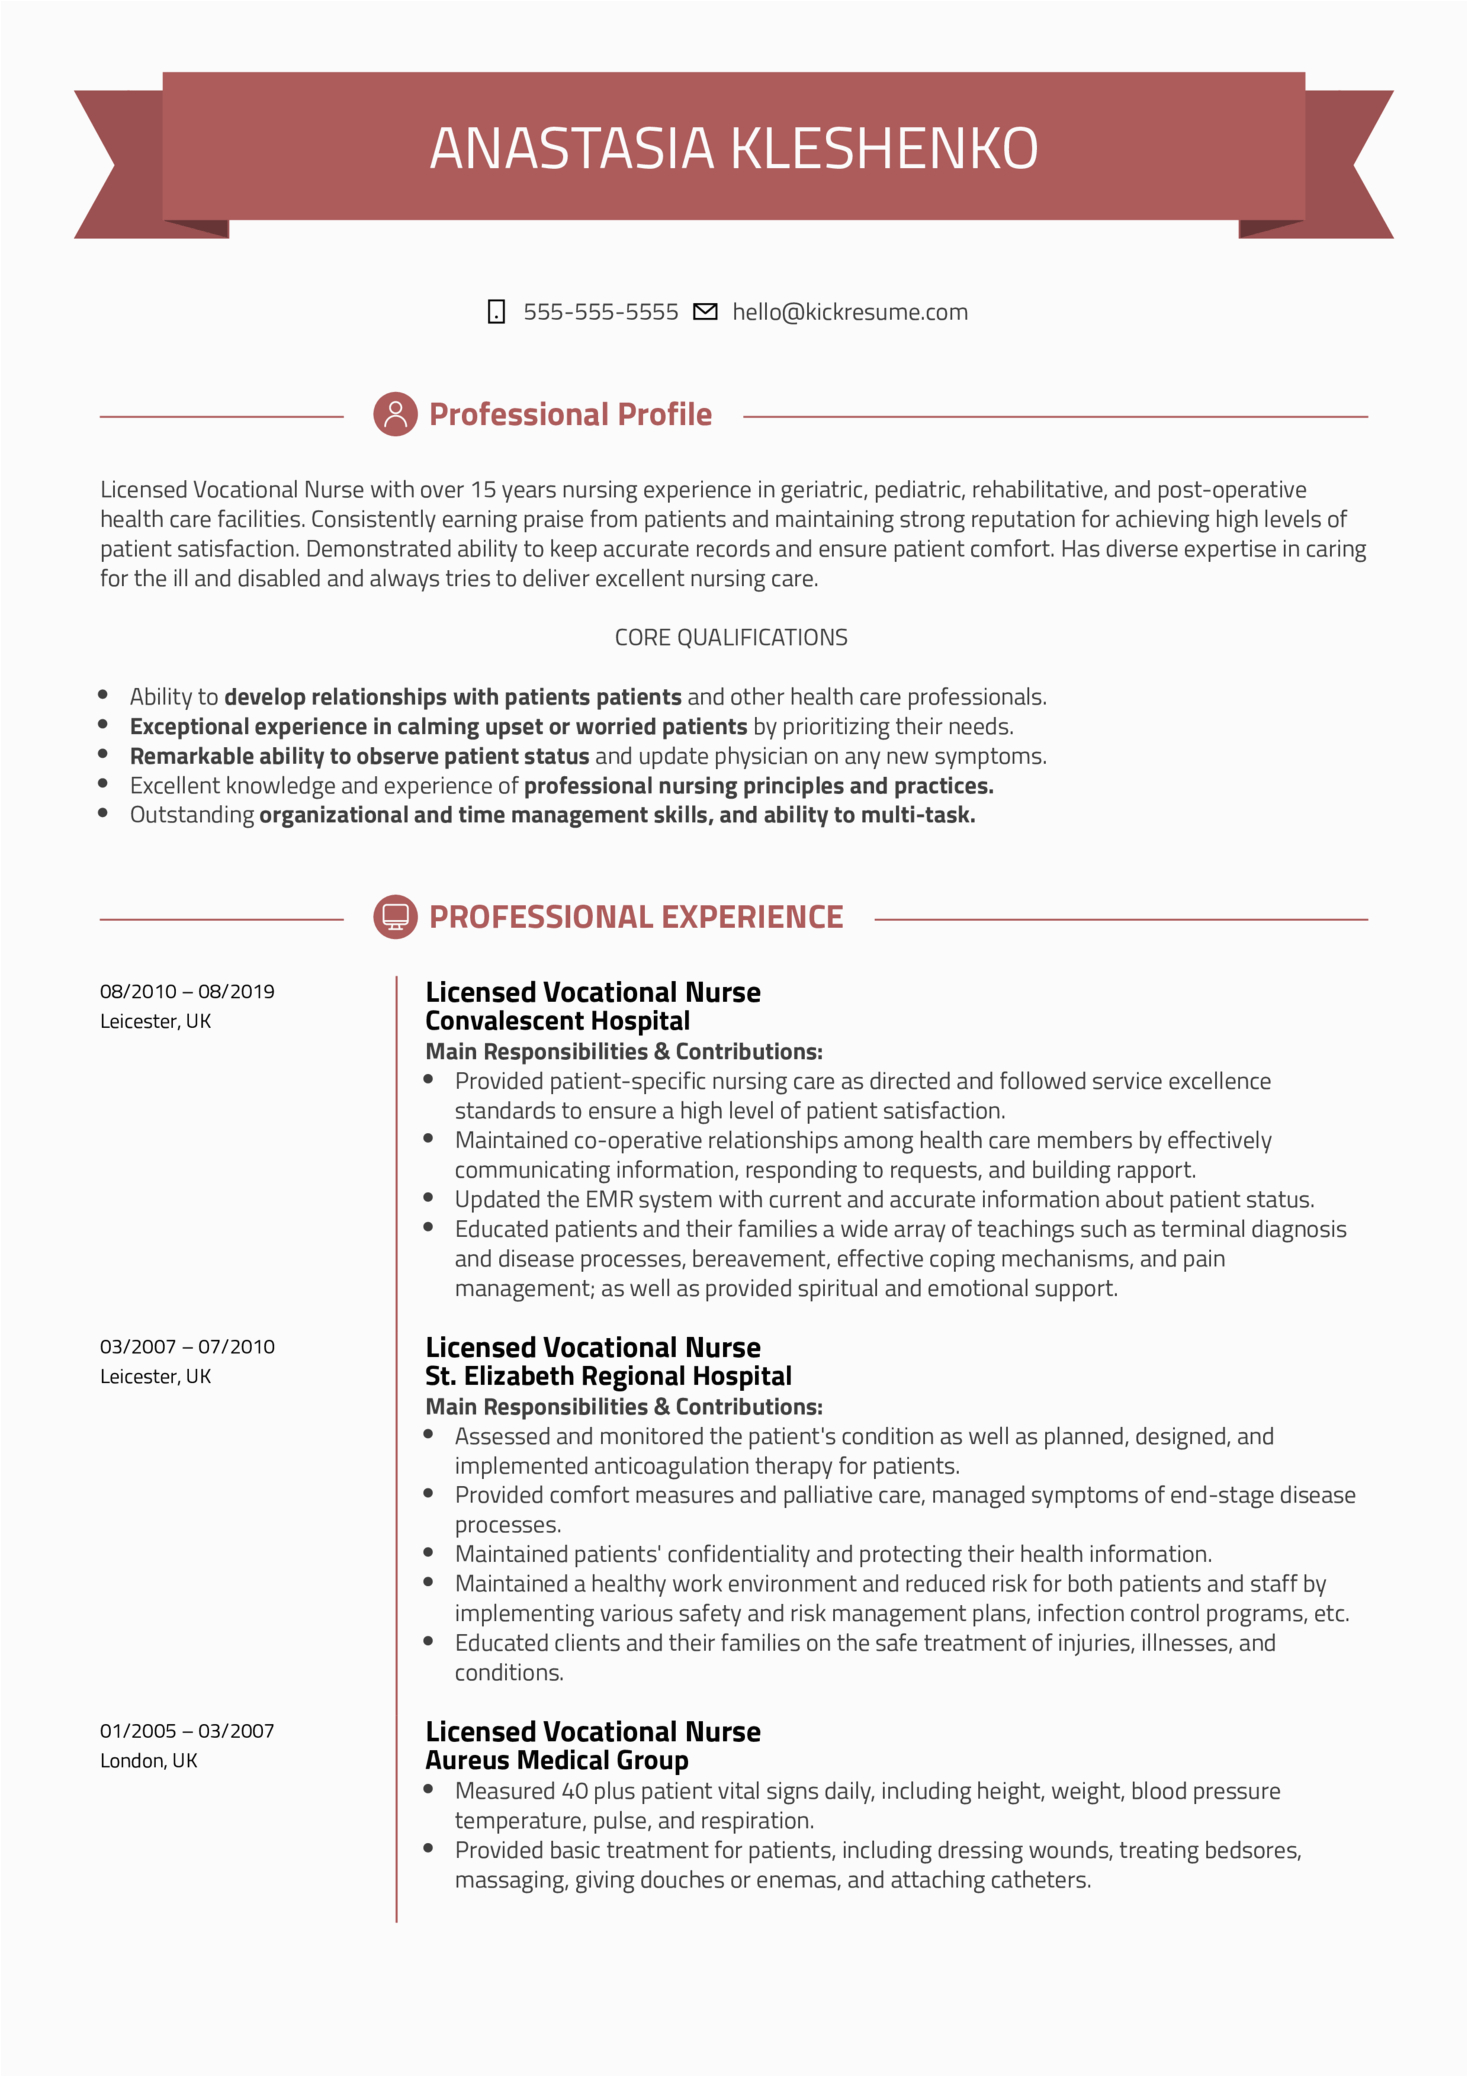 Sample Resume for Licensed Vocational Nurse Licensed Vocational Nurse Resume Template